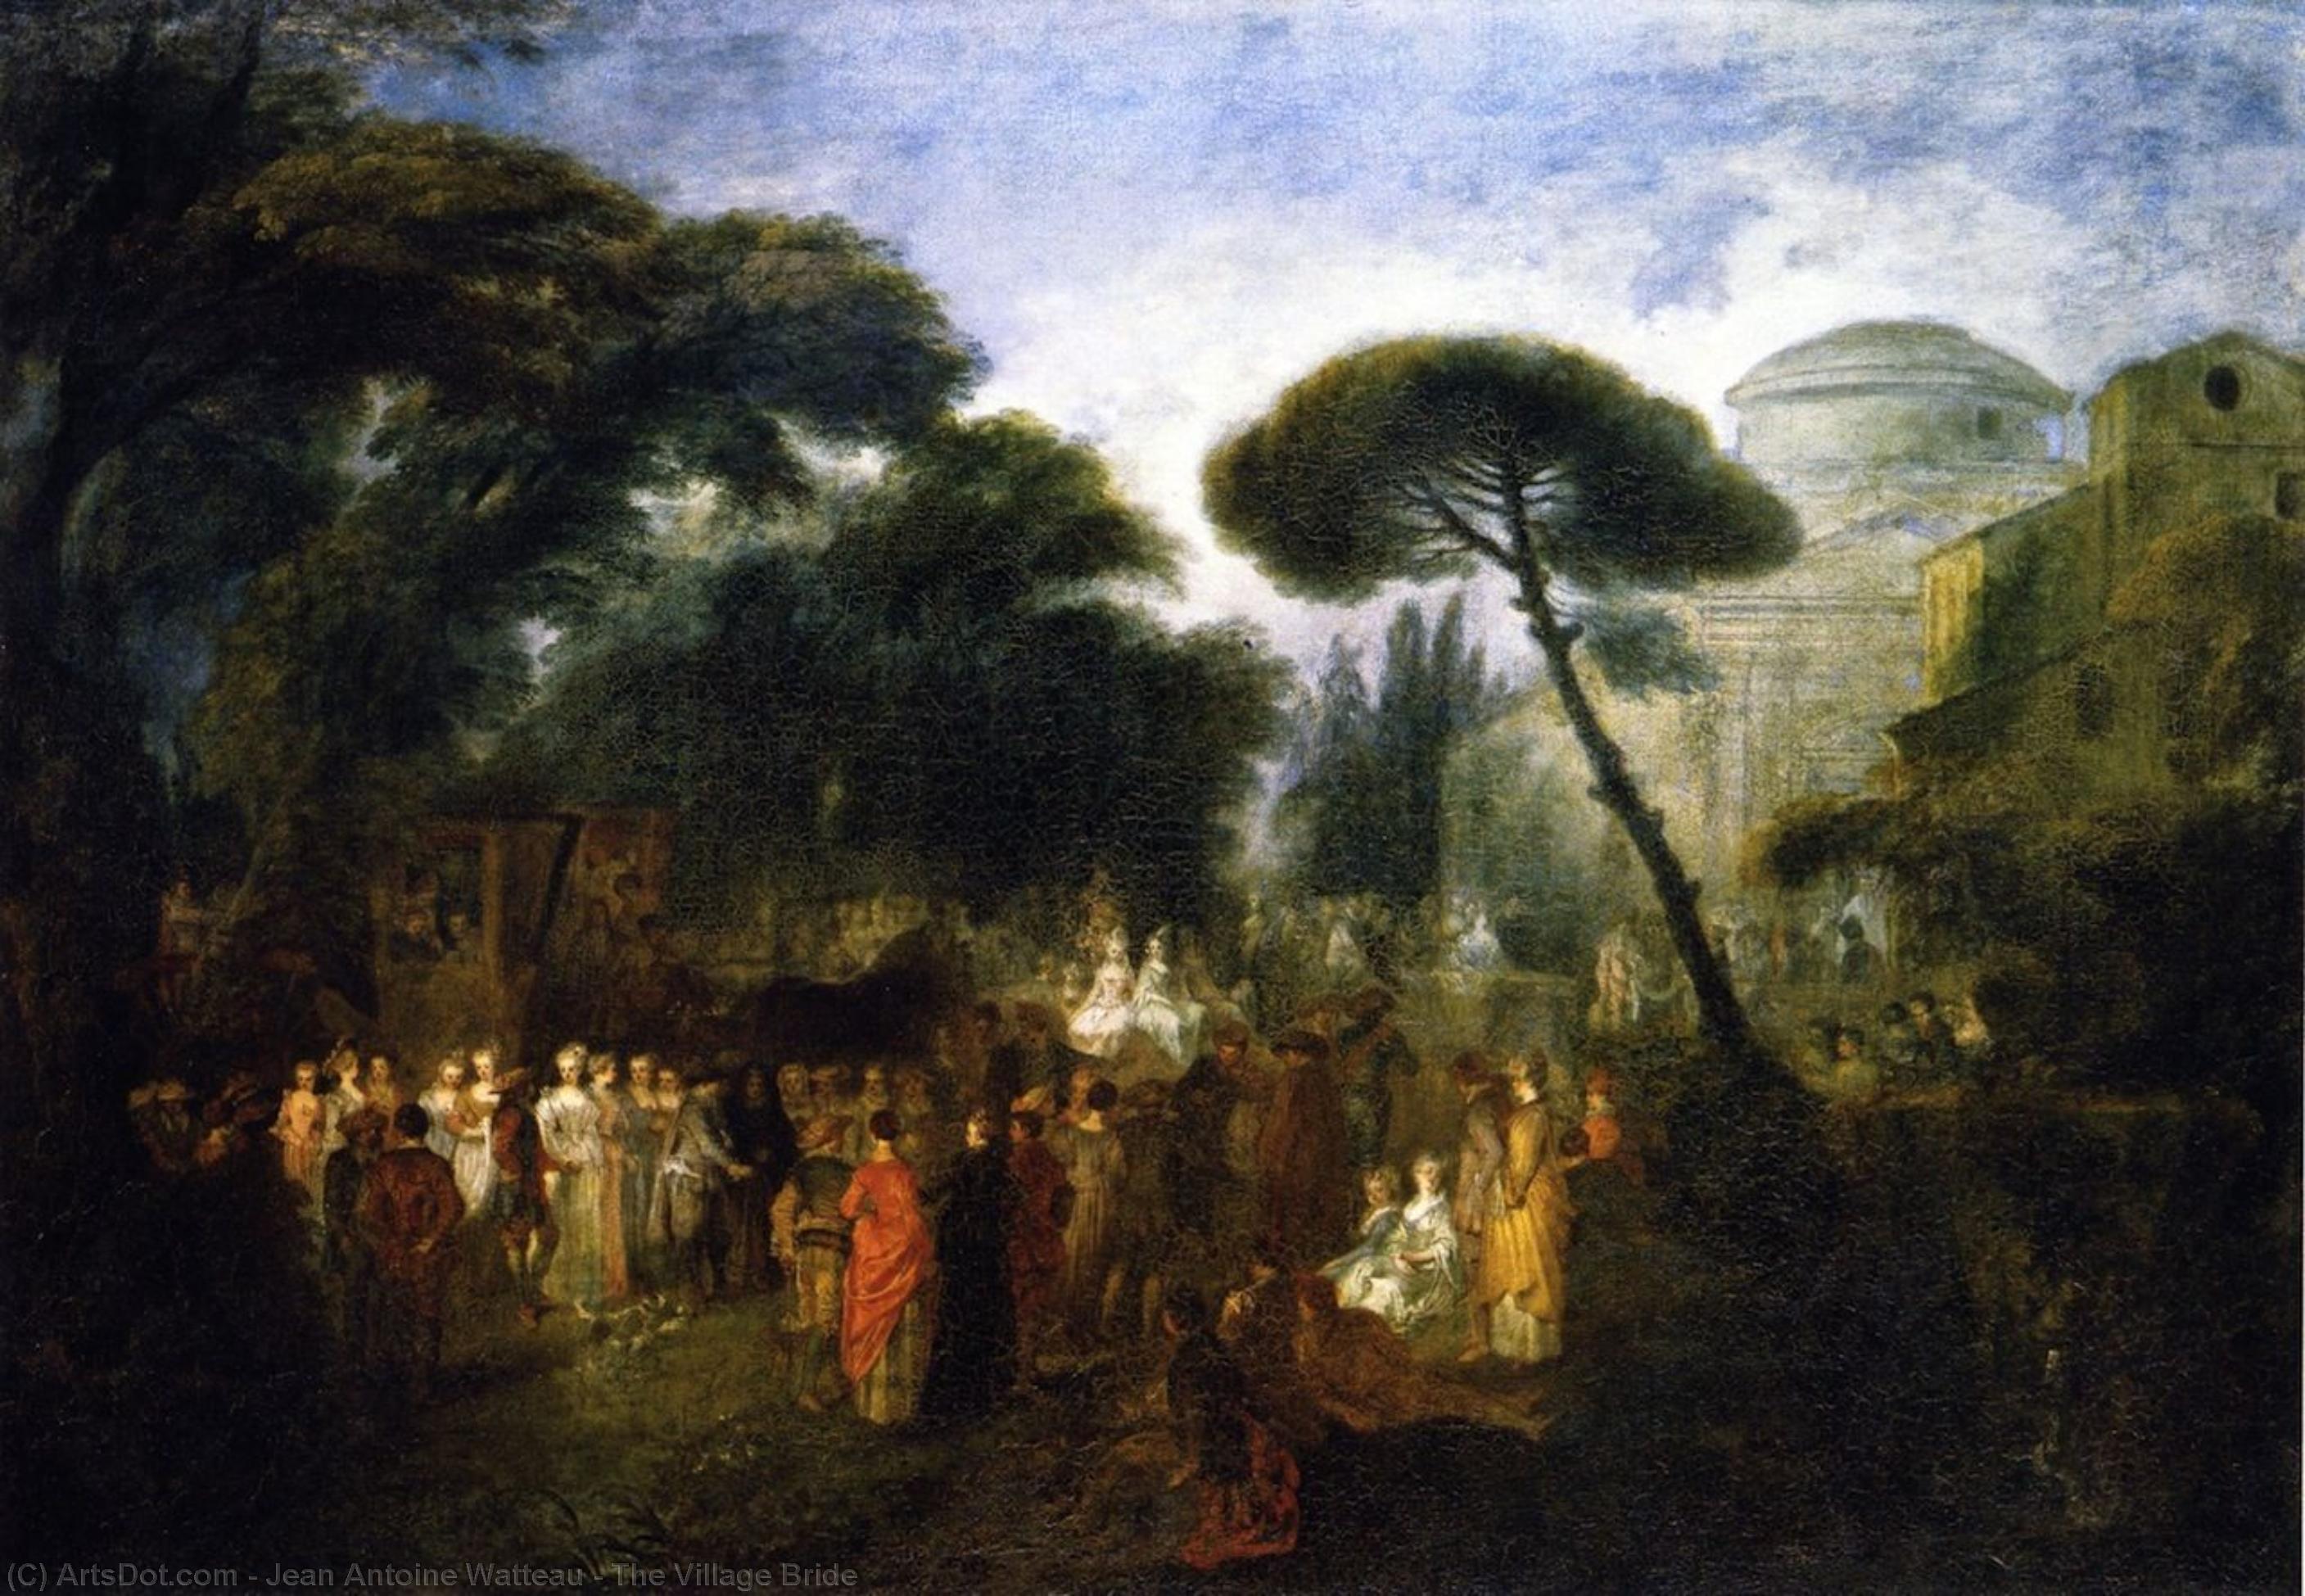 WikiOO.org - Енциклопедія образотворчого мистецтва - Живопис, Картини
 Jean Antoine Watteau - The Village Bride